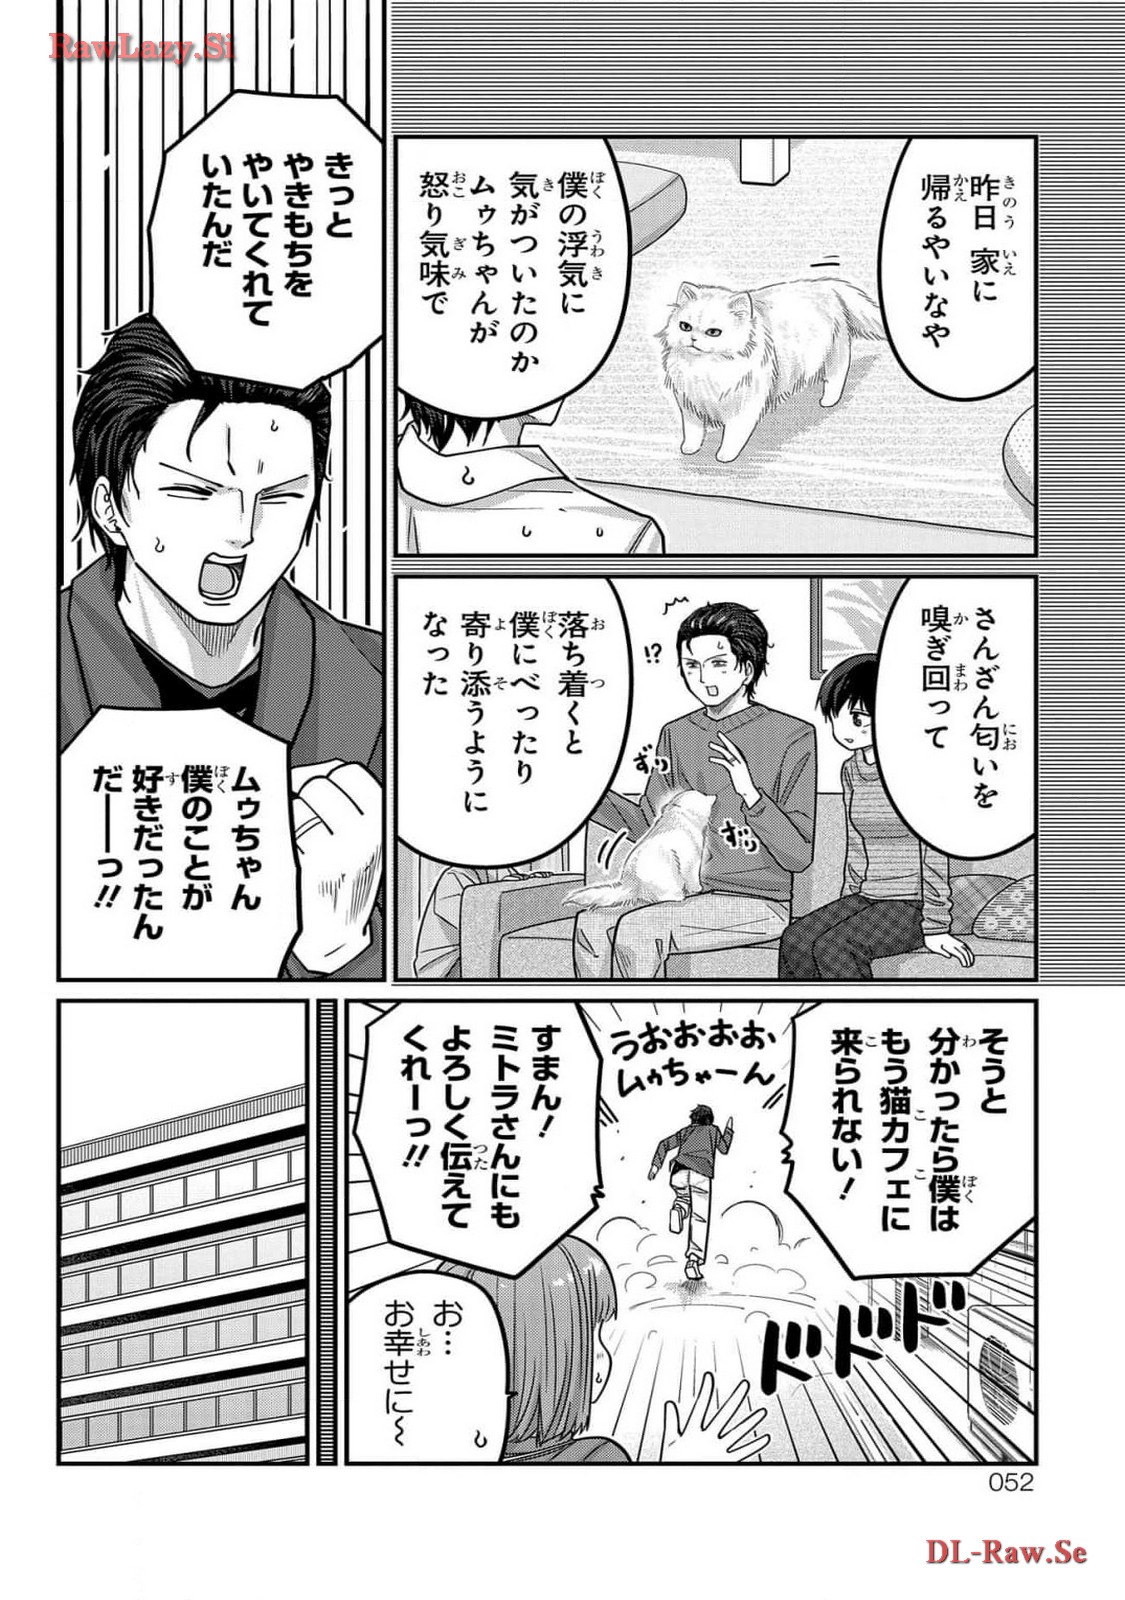 Kawaisugi Crisis - Chapter 99 - Page 14